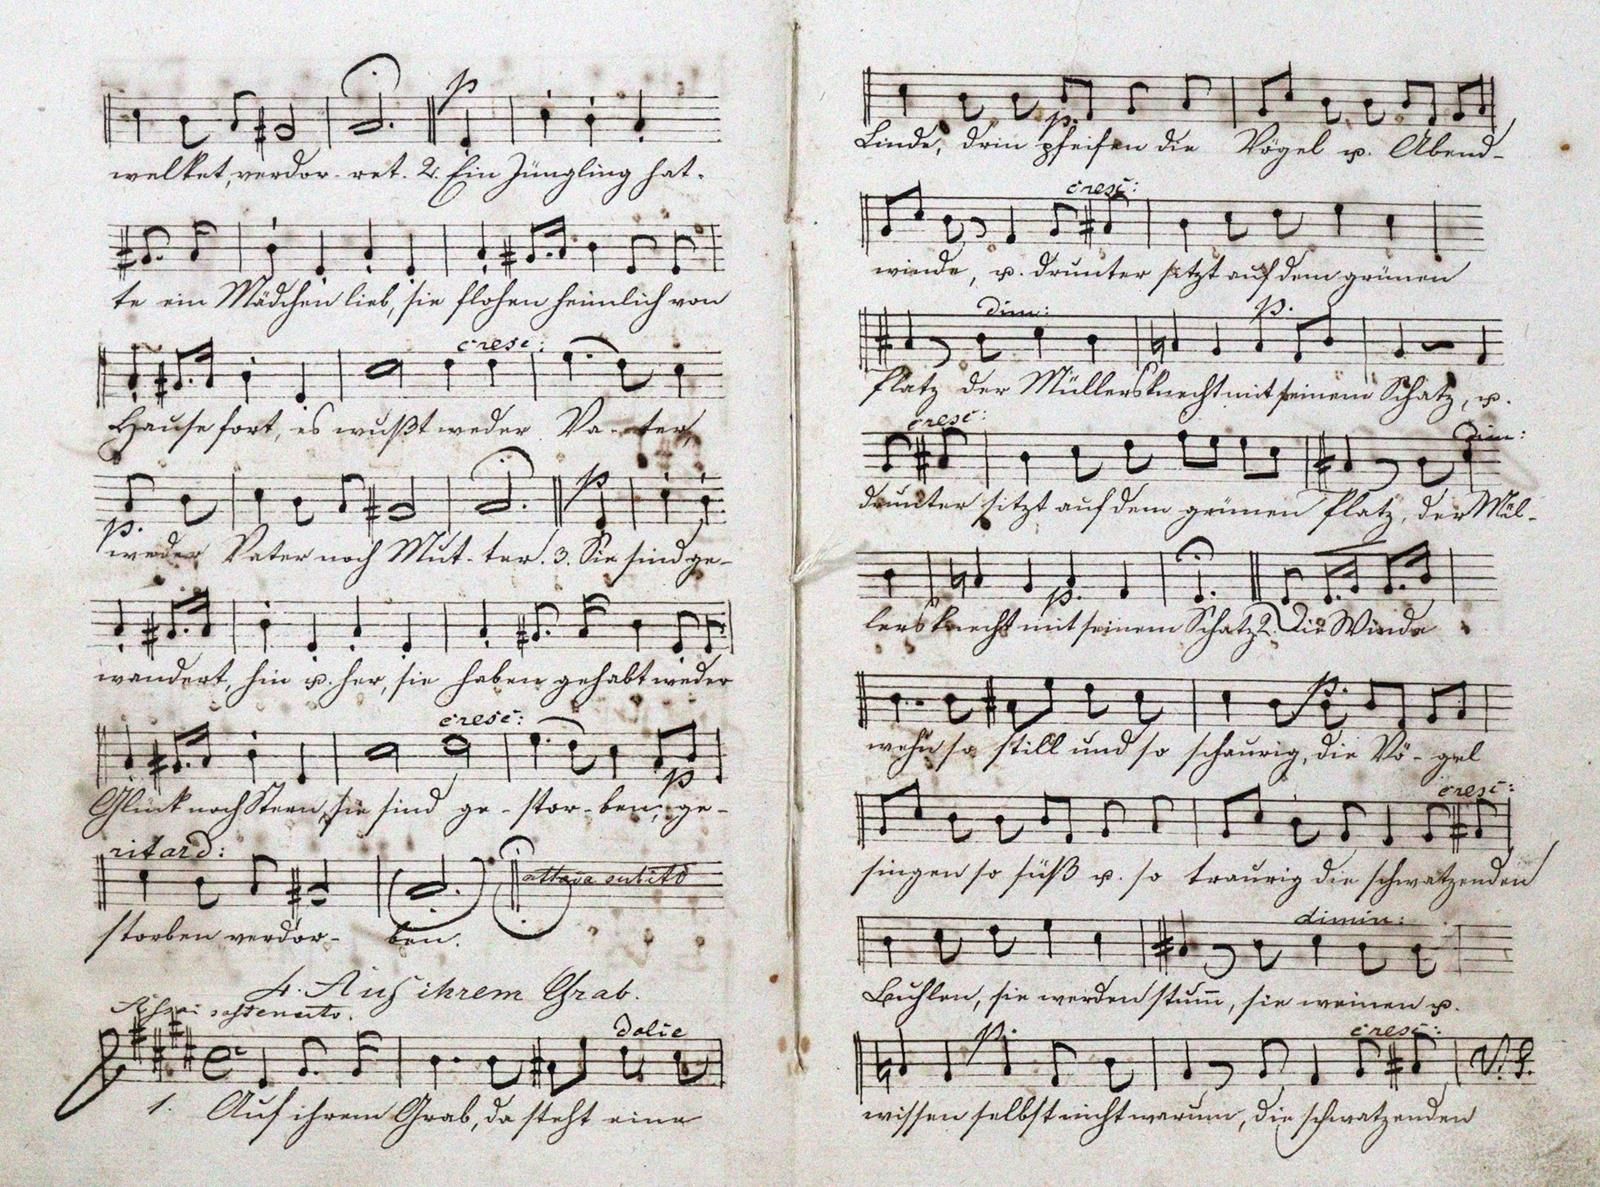 Papst,W. Chansons pour soprano, alto, ténor et basse, composées par Felix Mendel&hellip;